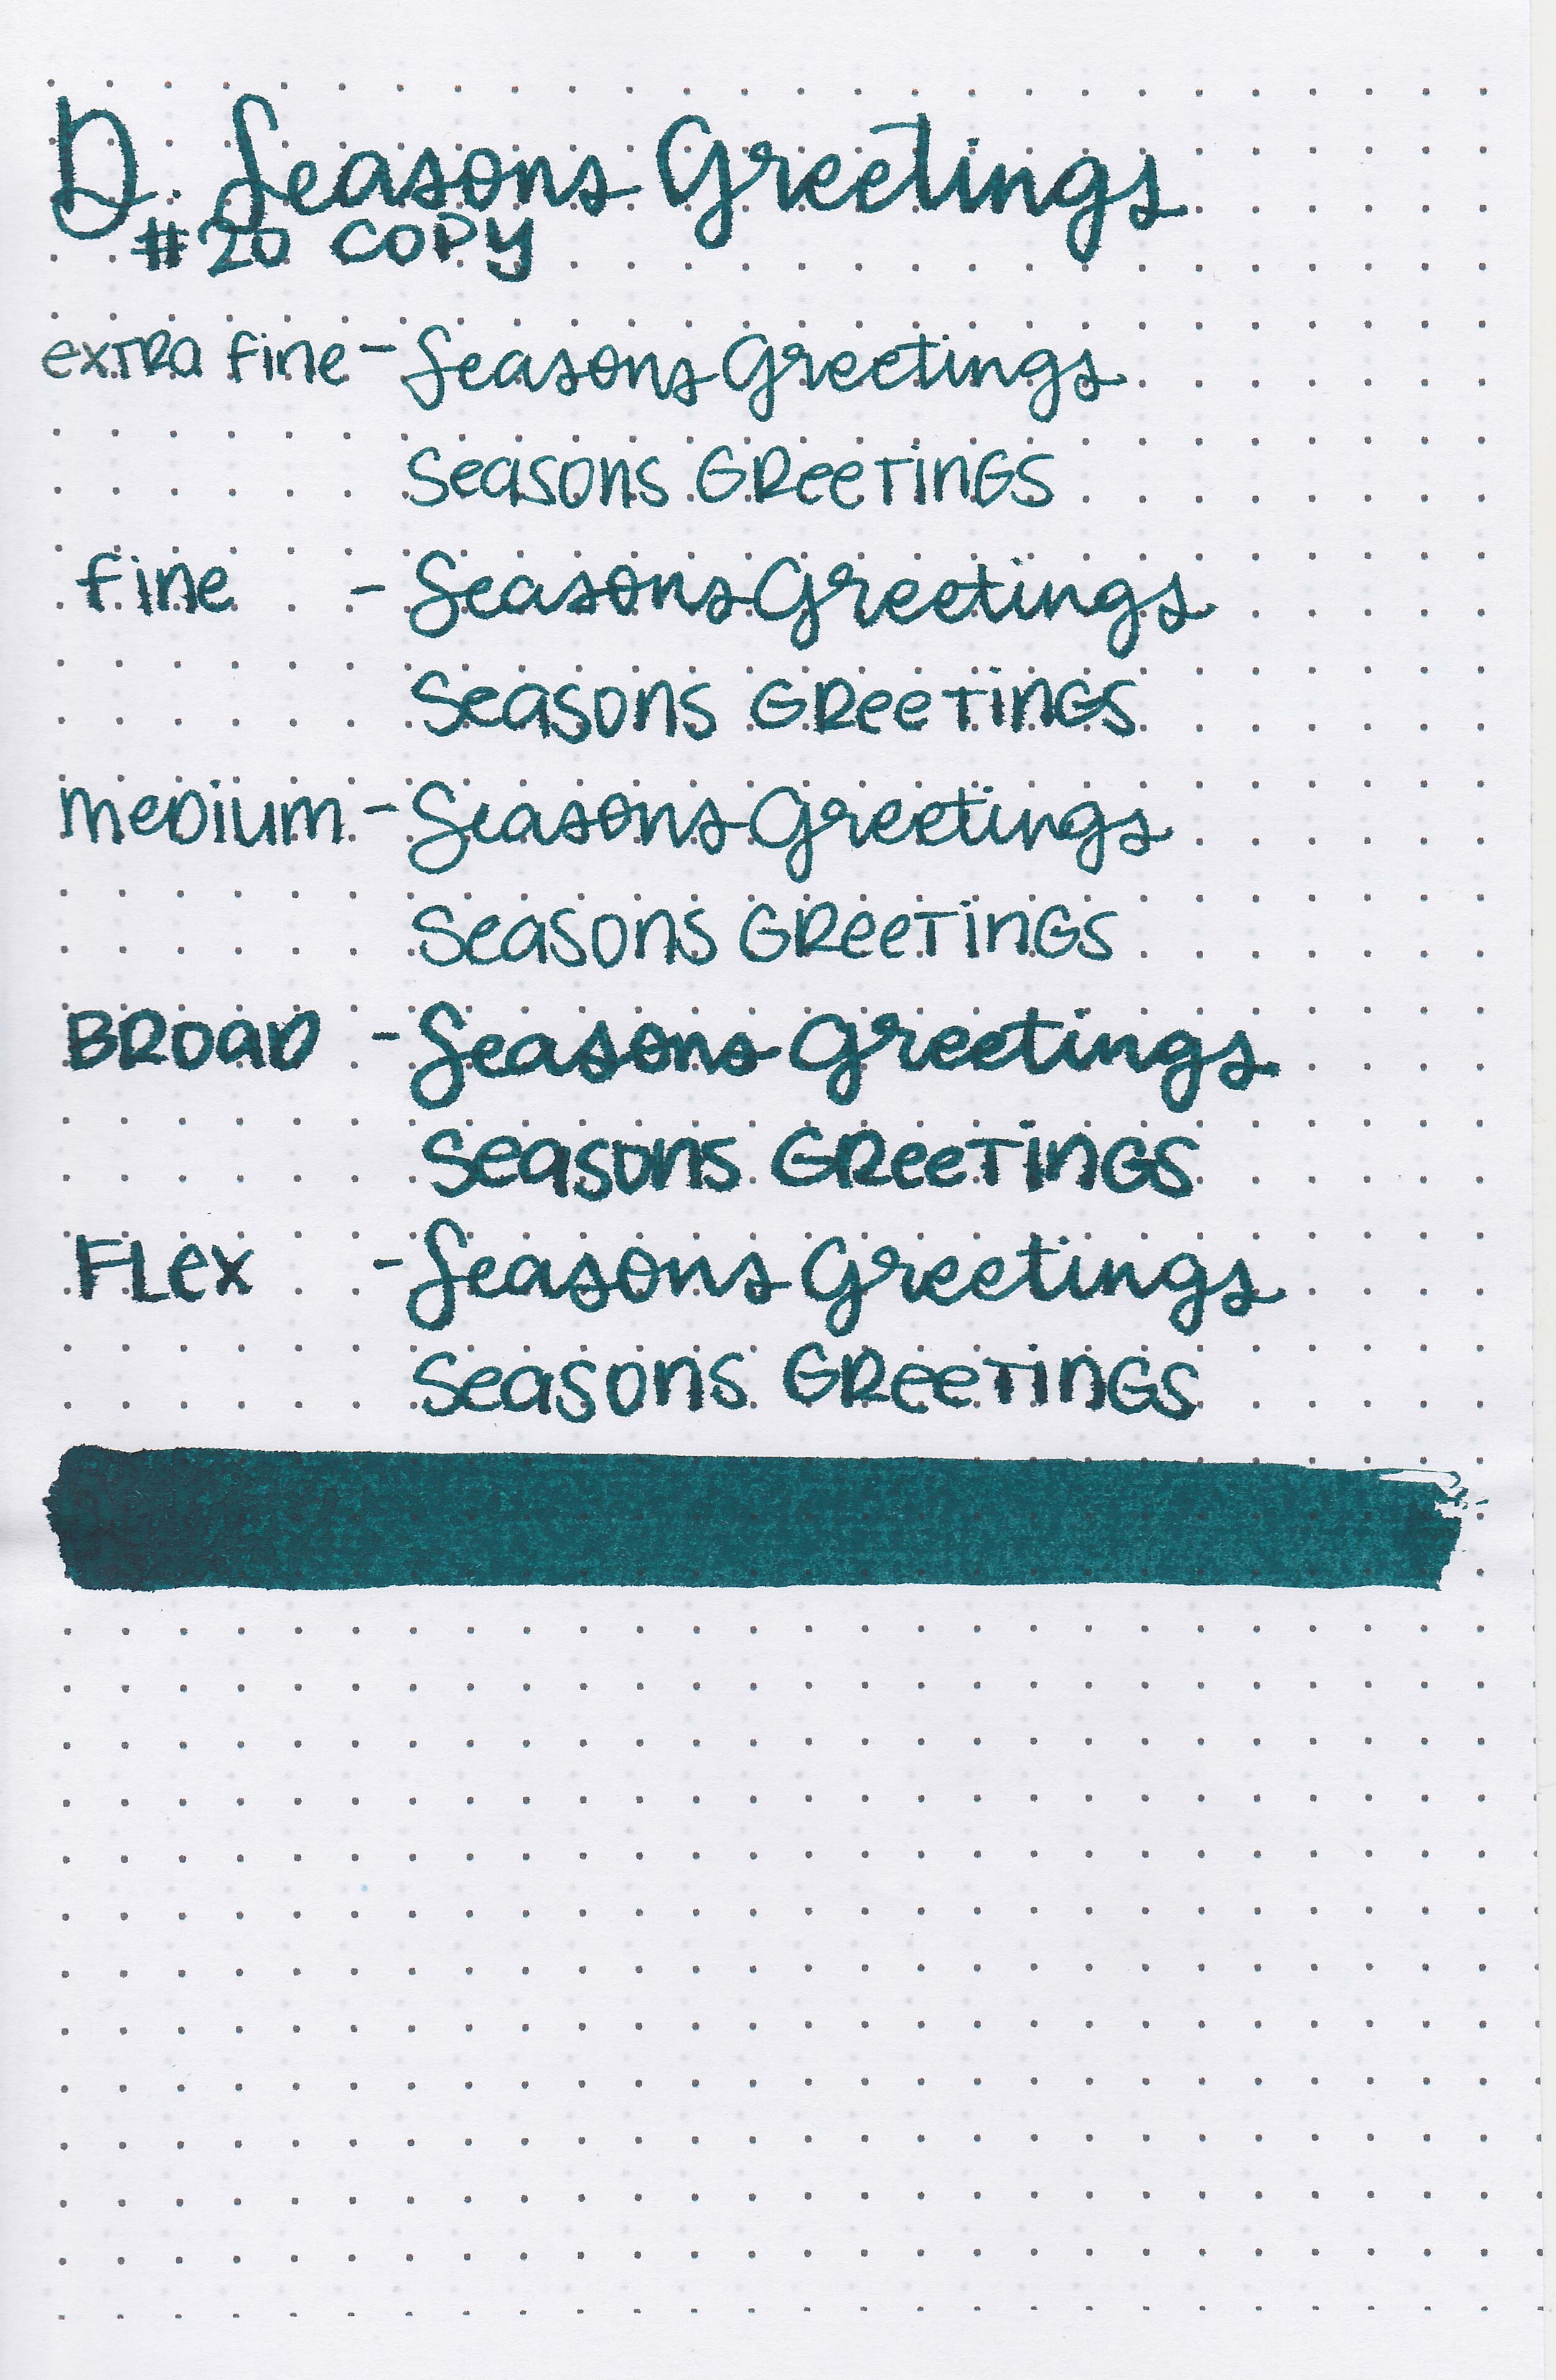 d-seasons-greetings-11.jpg